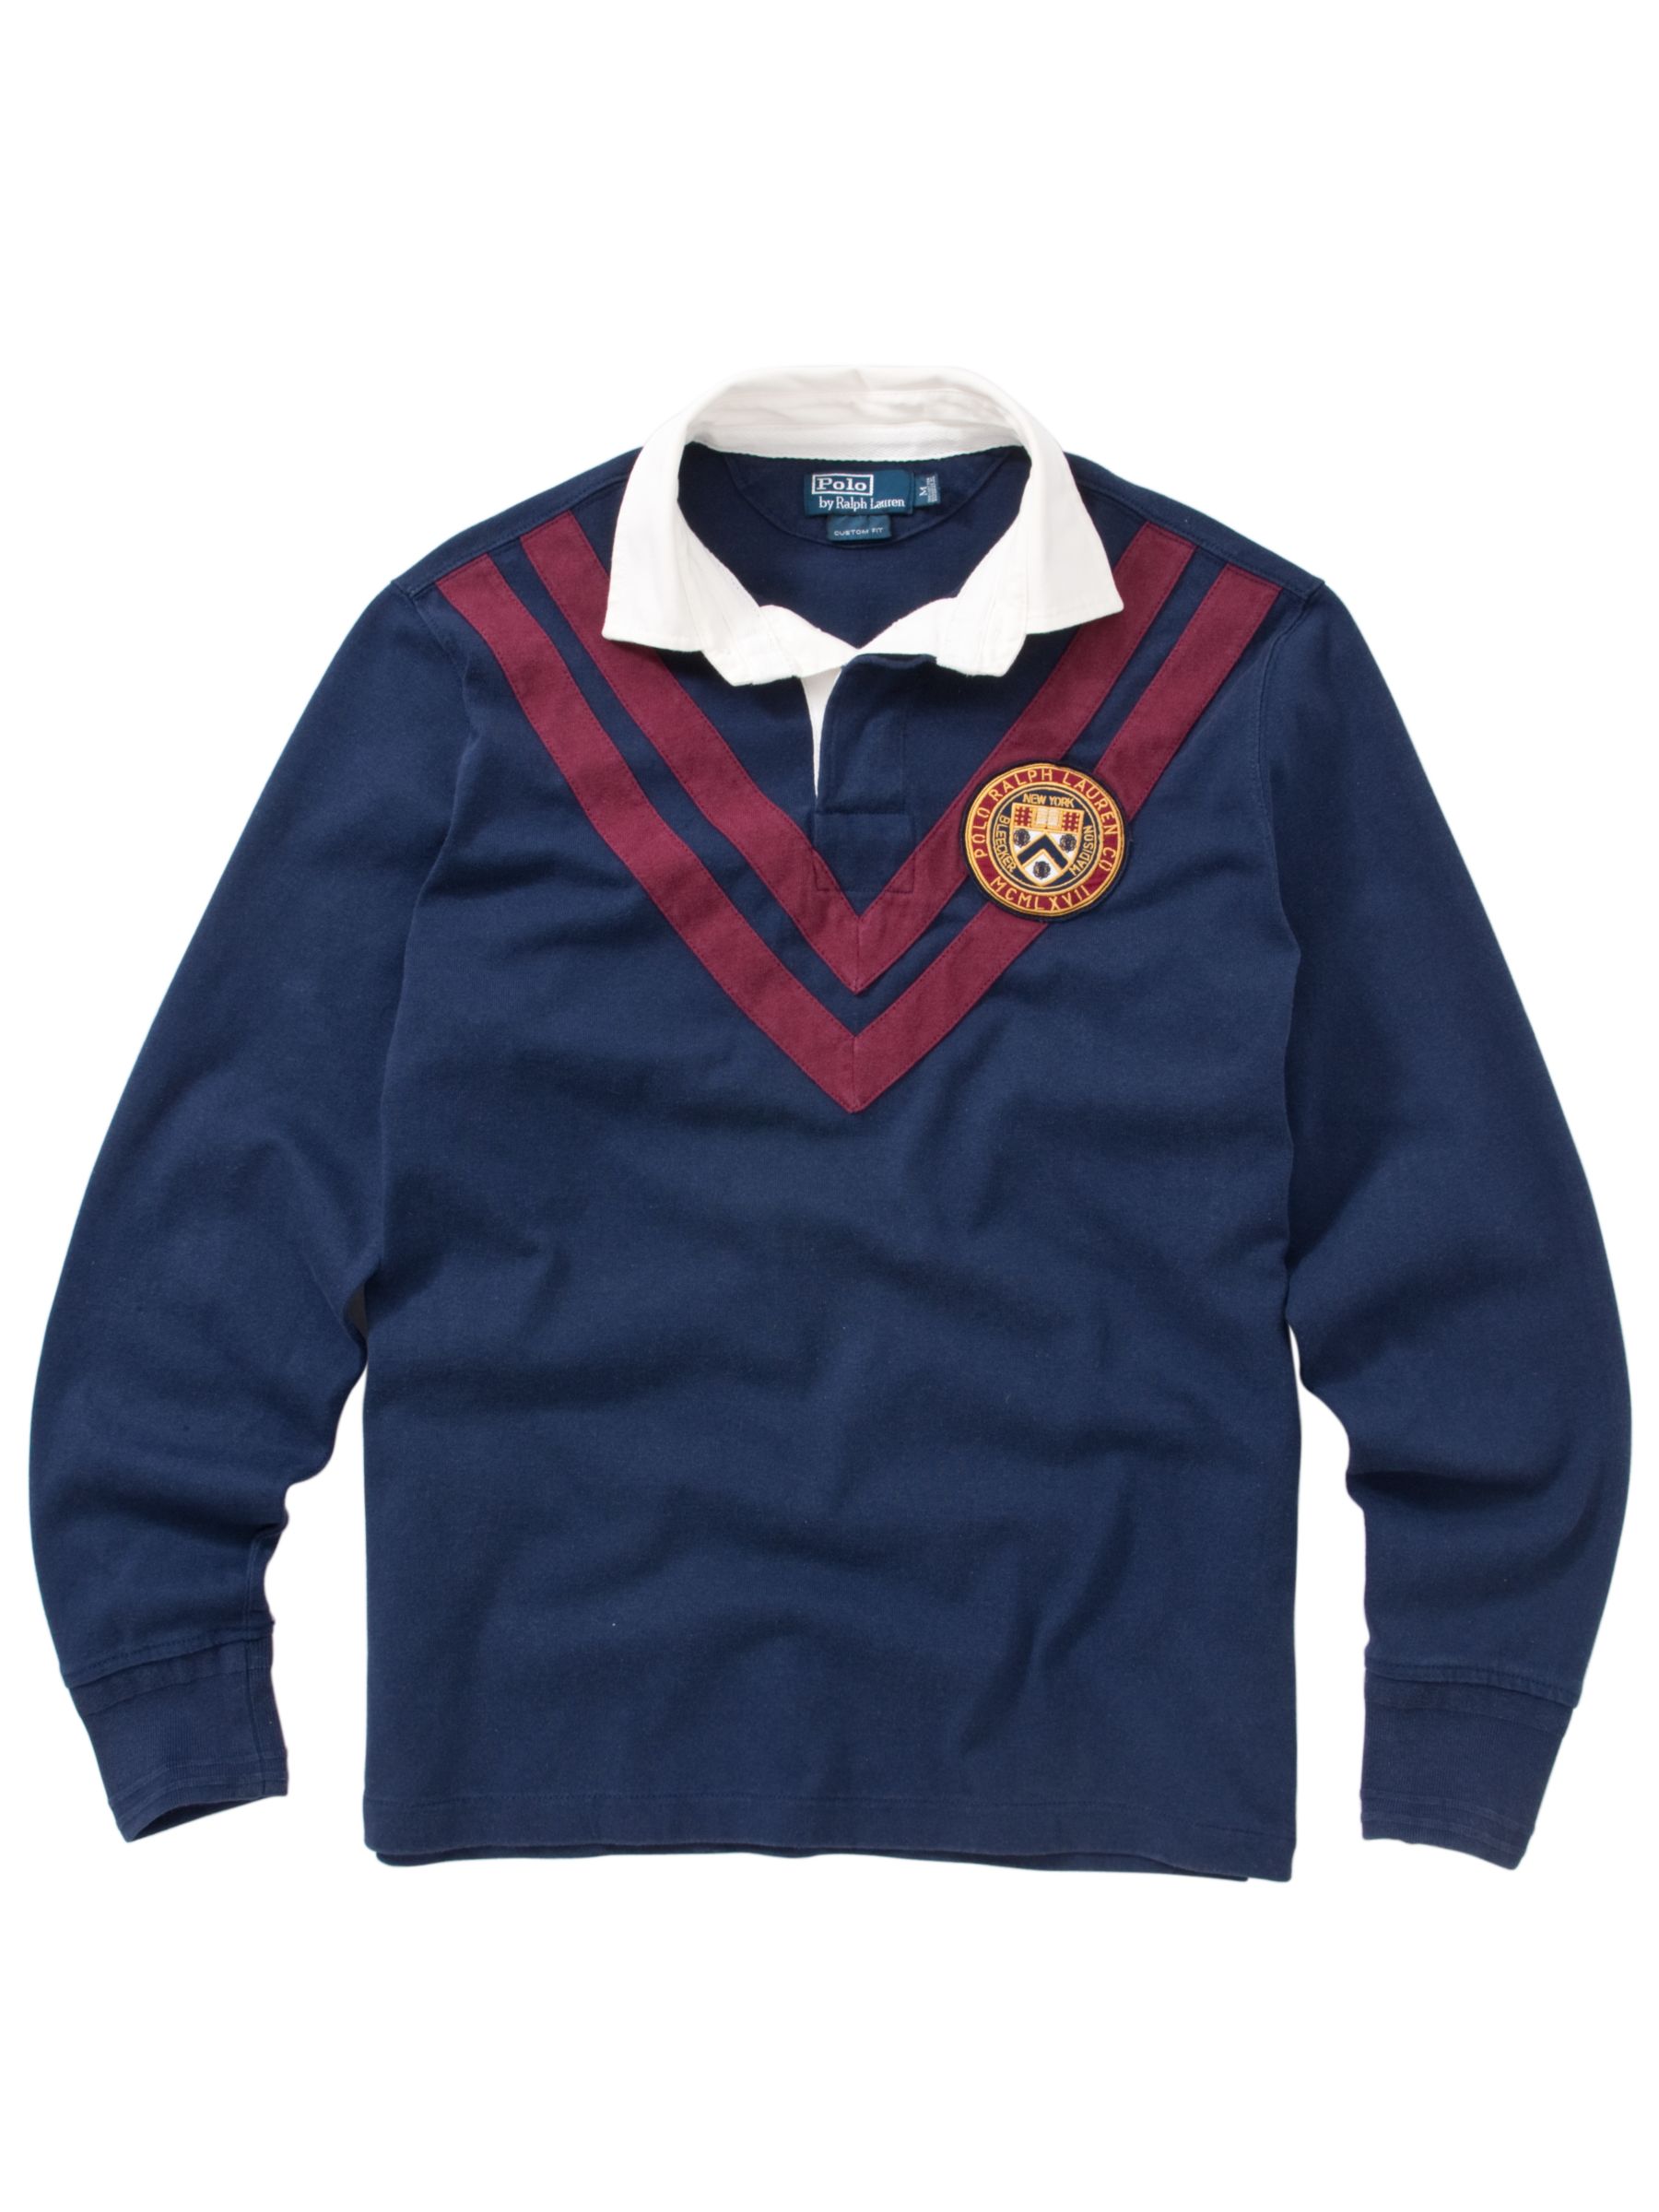 Polo Ralph Lauren Rugby Shirt, Navy Blue